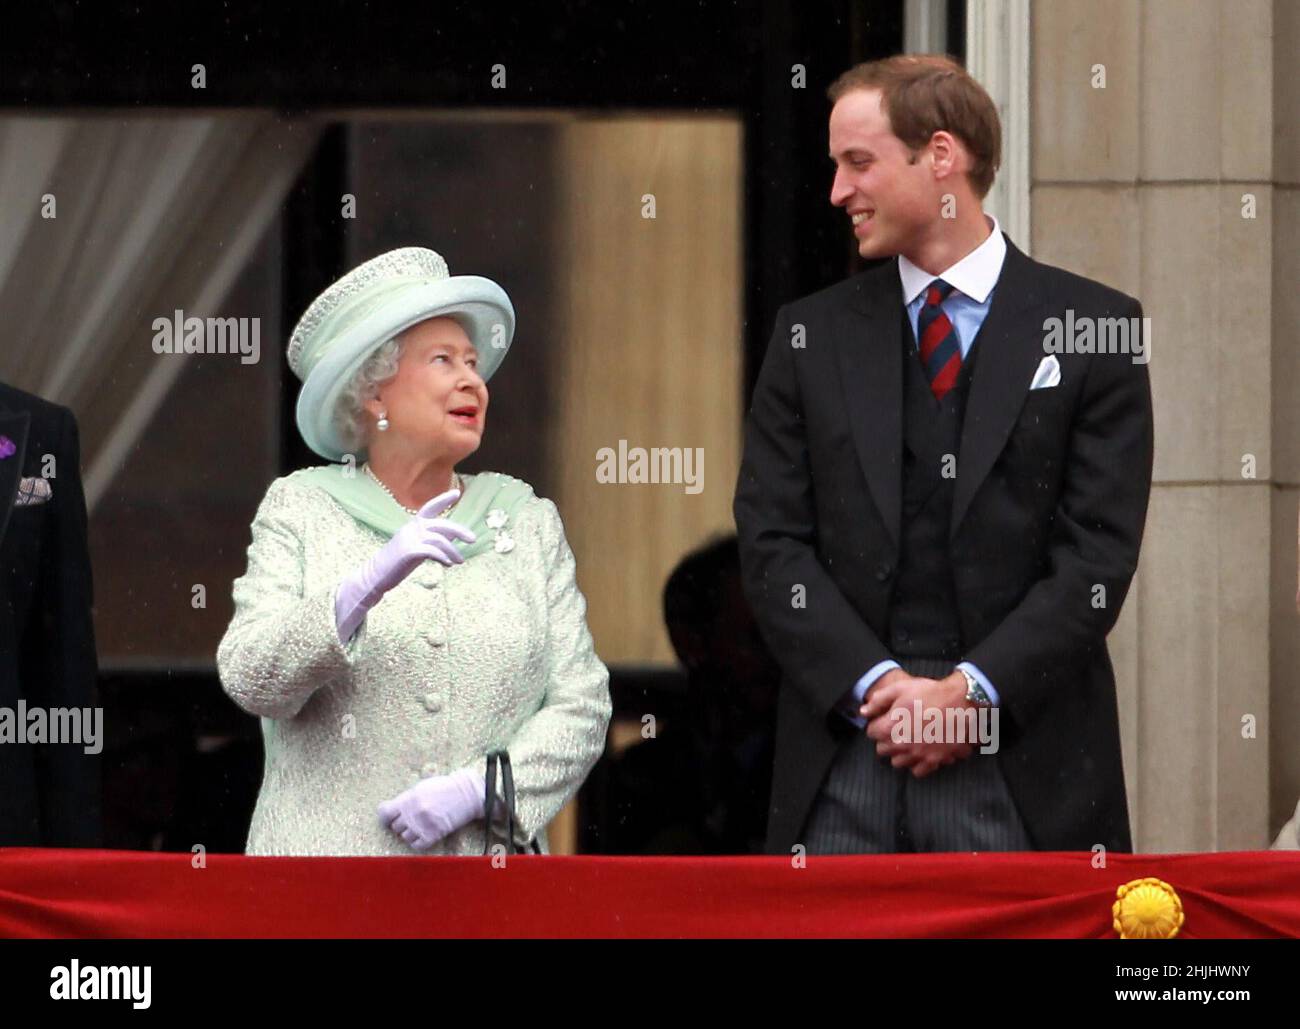 Datei-Foto vom 05/06/12 von Königin Elizabeth II. Und dem Herzog von Cambridge, der im Rahmen der Feierlichkeiten zum Diamantenjubiläum auf dem Balkon des Buckingham Palace auftrat. Ausgabedatum: Sonntag, 30. Januar 2022. Stockfoto